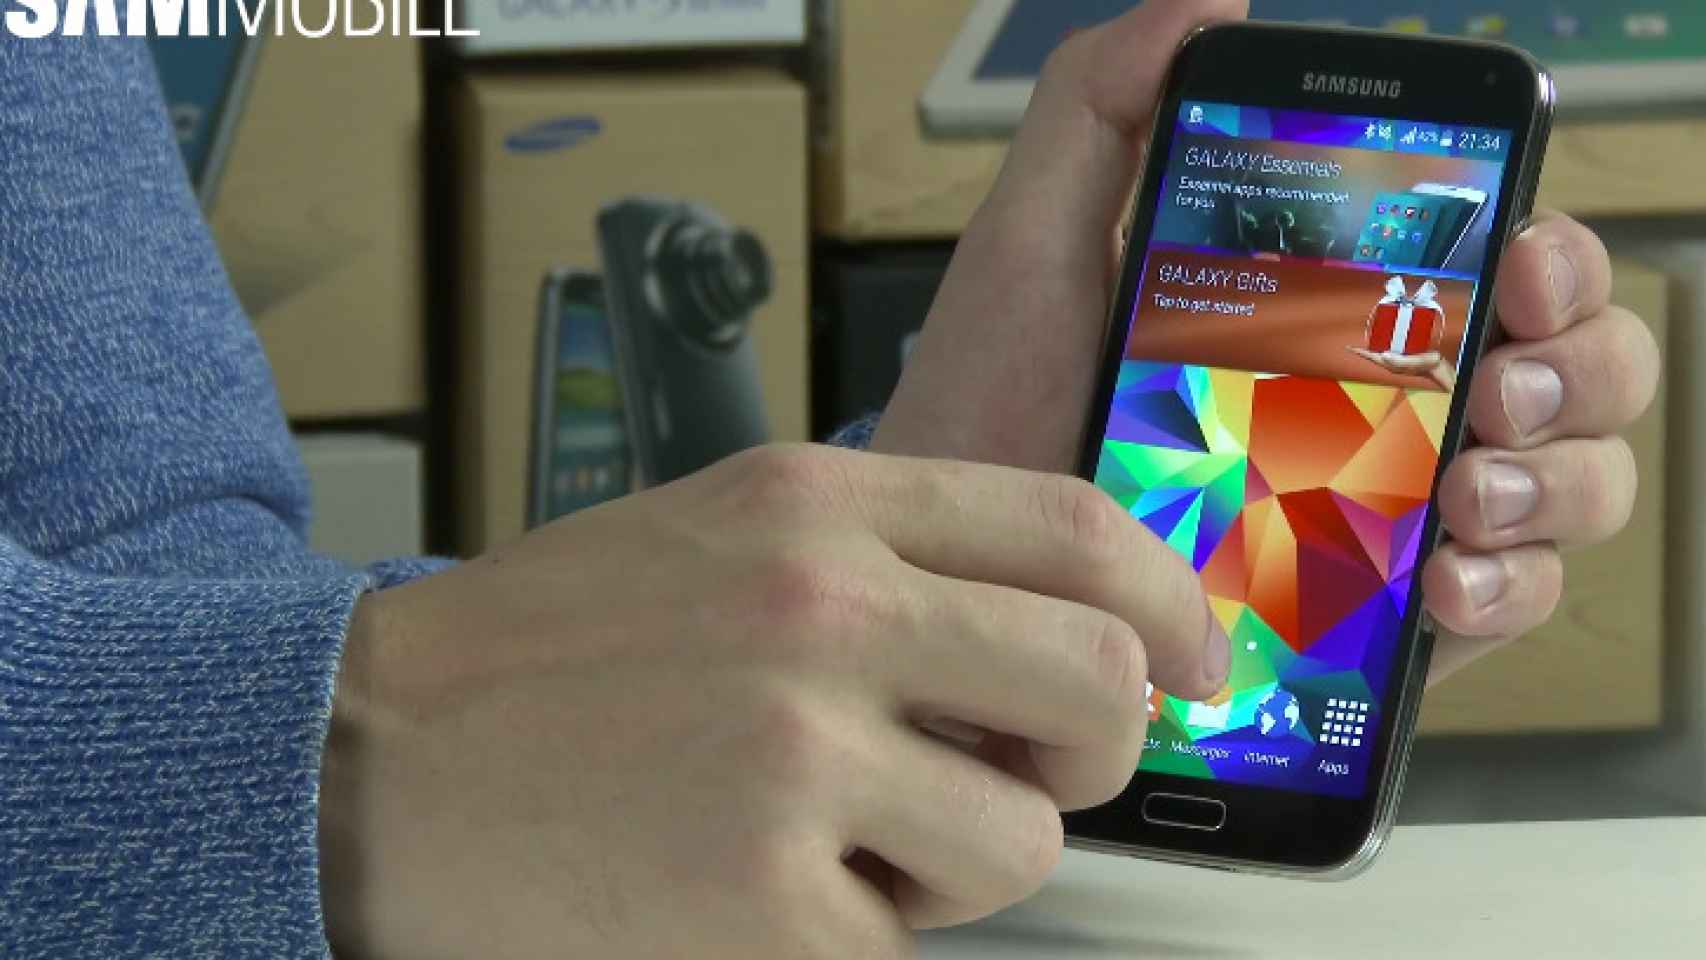 Así es Android 5.0 Lollipop en el Samsung Galaxy S5 y S4 (vídeo)